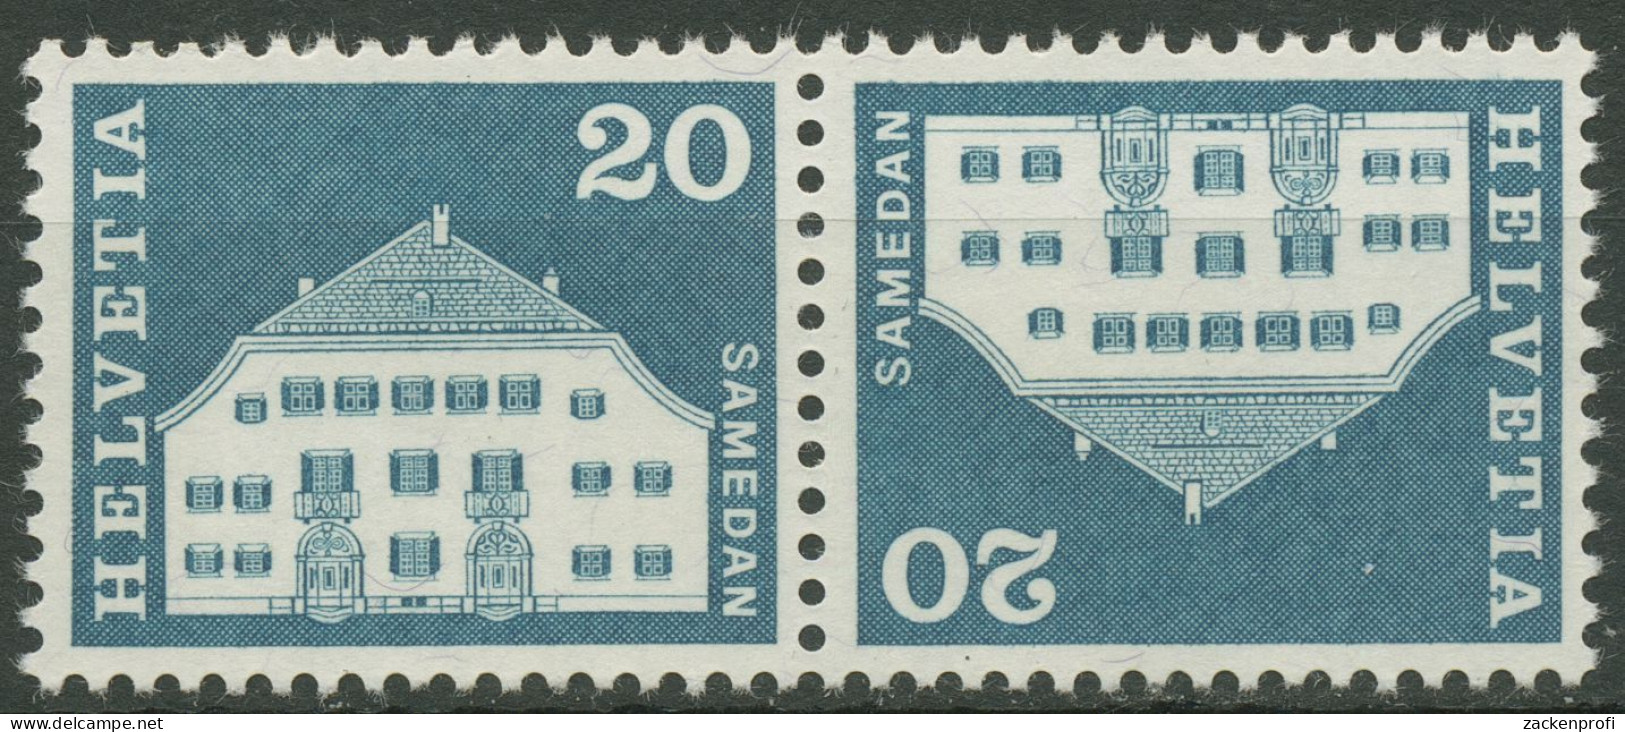 Schweiz 1968 Bauwerke Planta-Haus Samedan 881 Kehrdruck K 51 Postfrisch - Nuovi